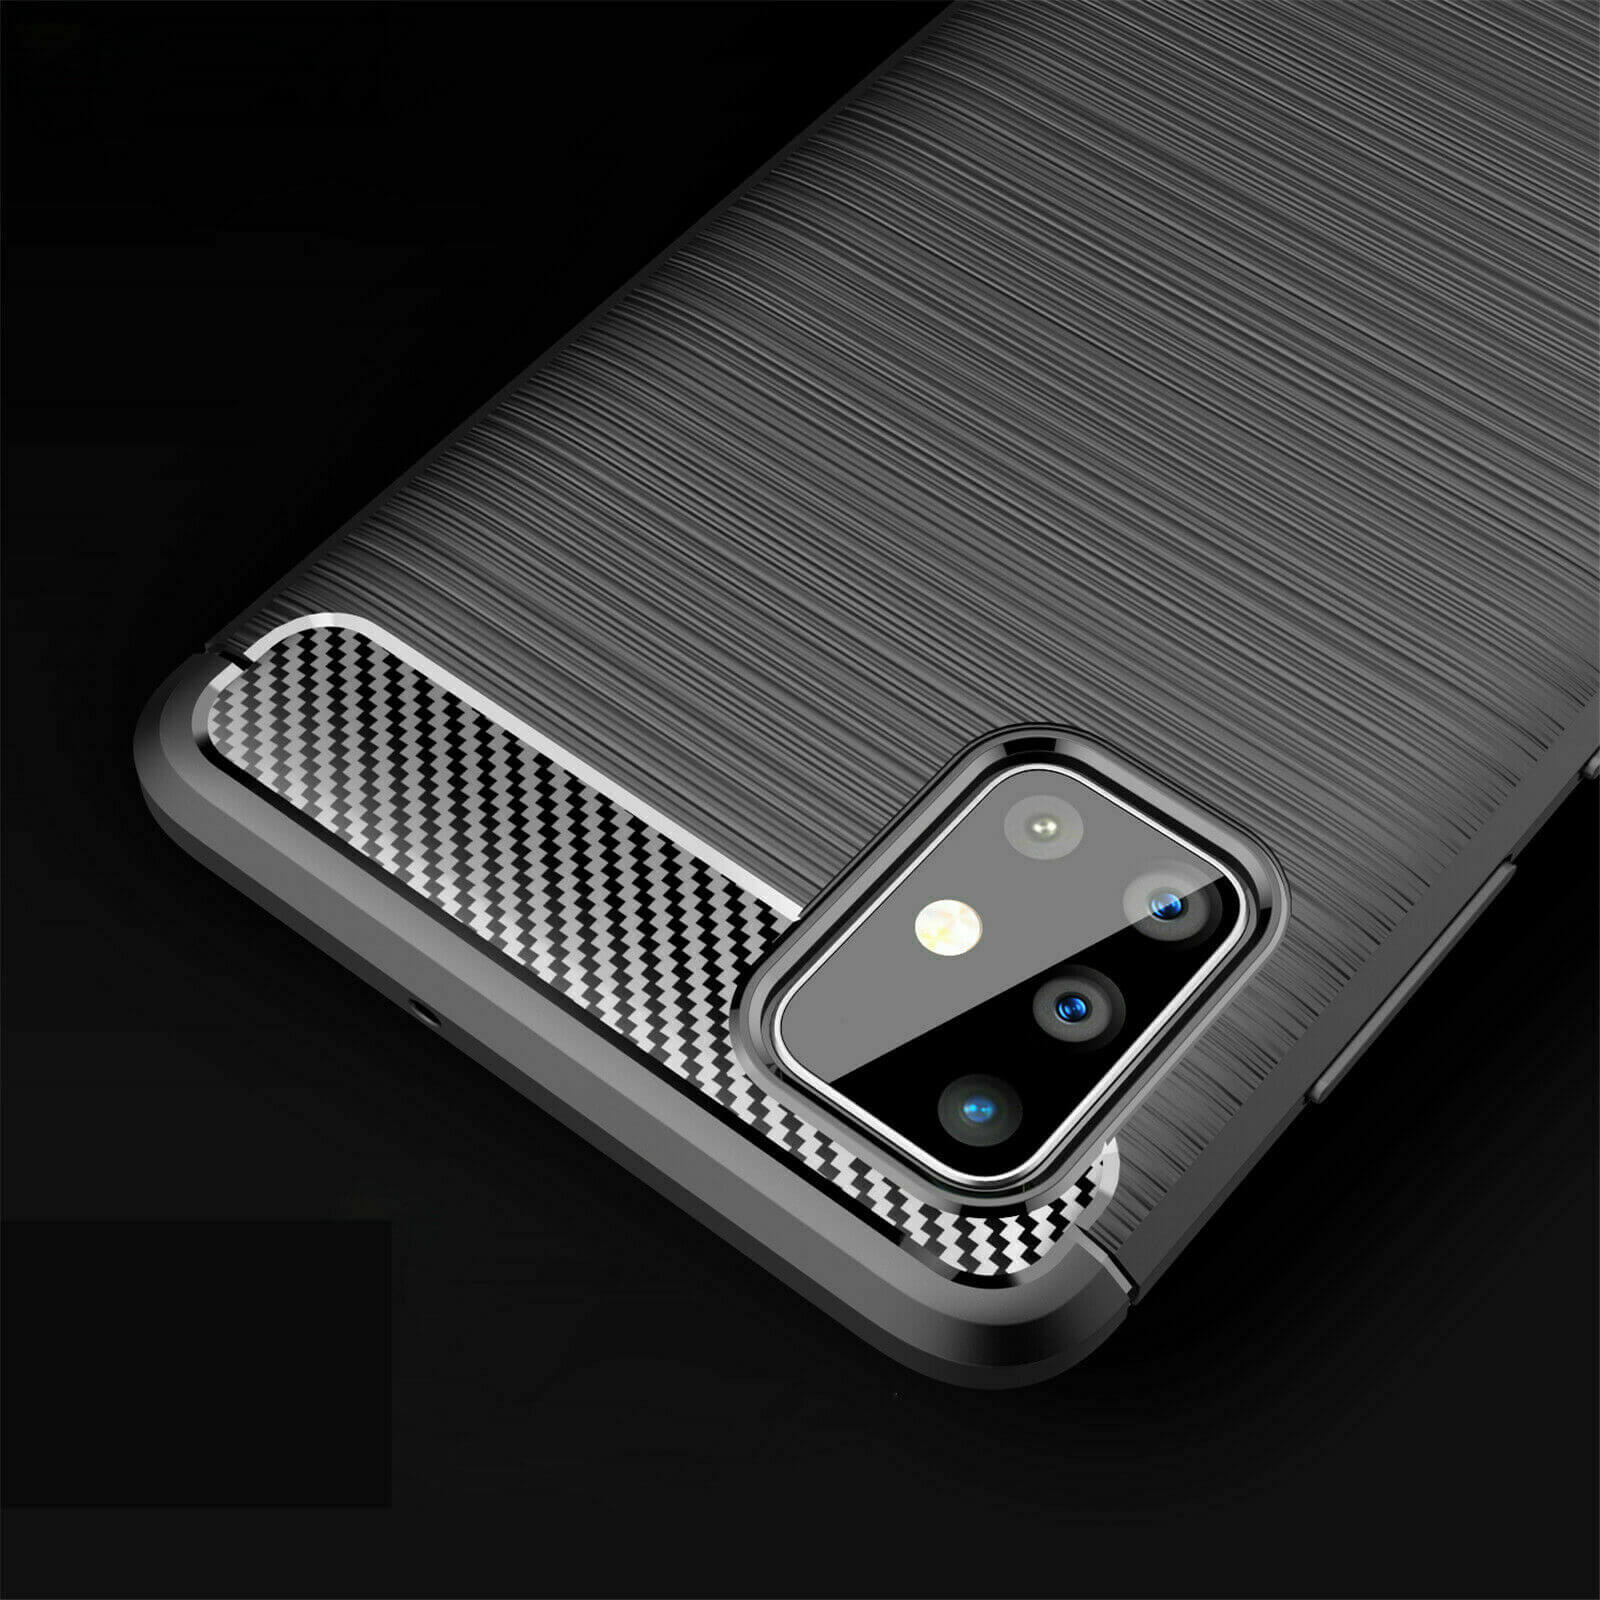 For Samsung Galaxy A51 Carbon Fibre Design Case TPU Cover - Black